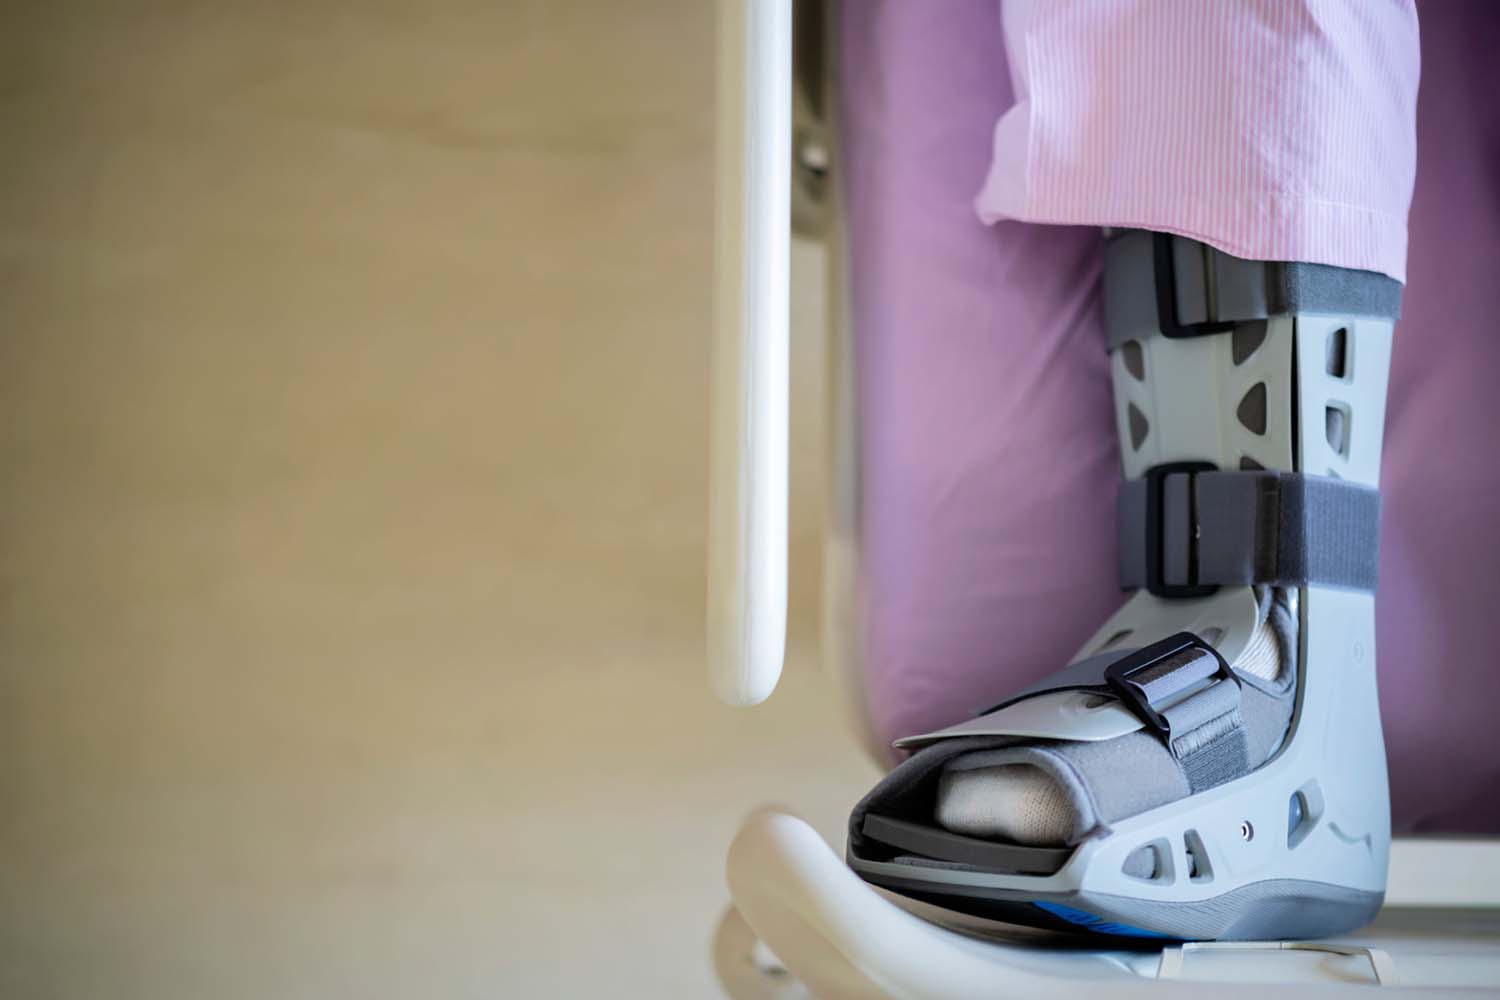 踝足矫形器(AFO)作为医疗保健创新